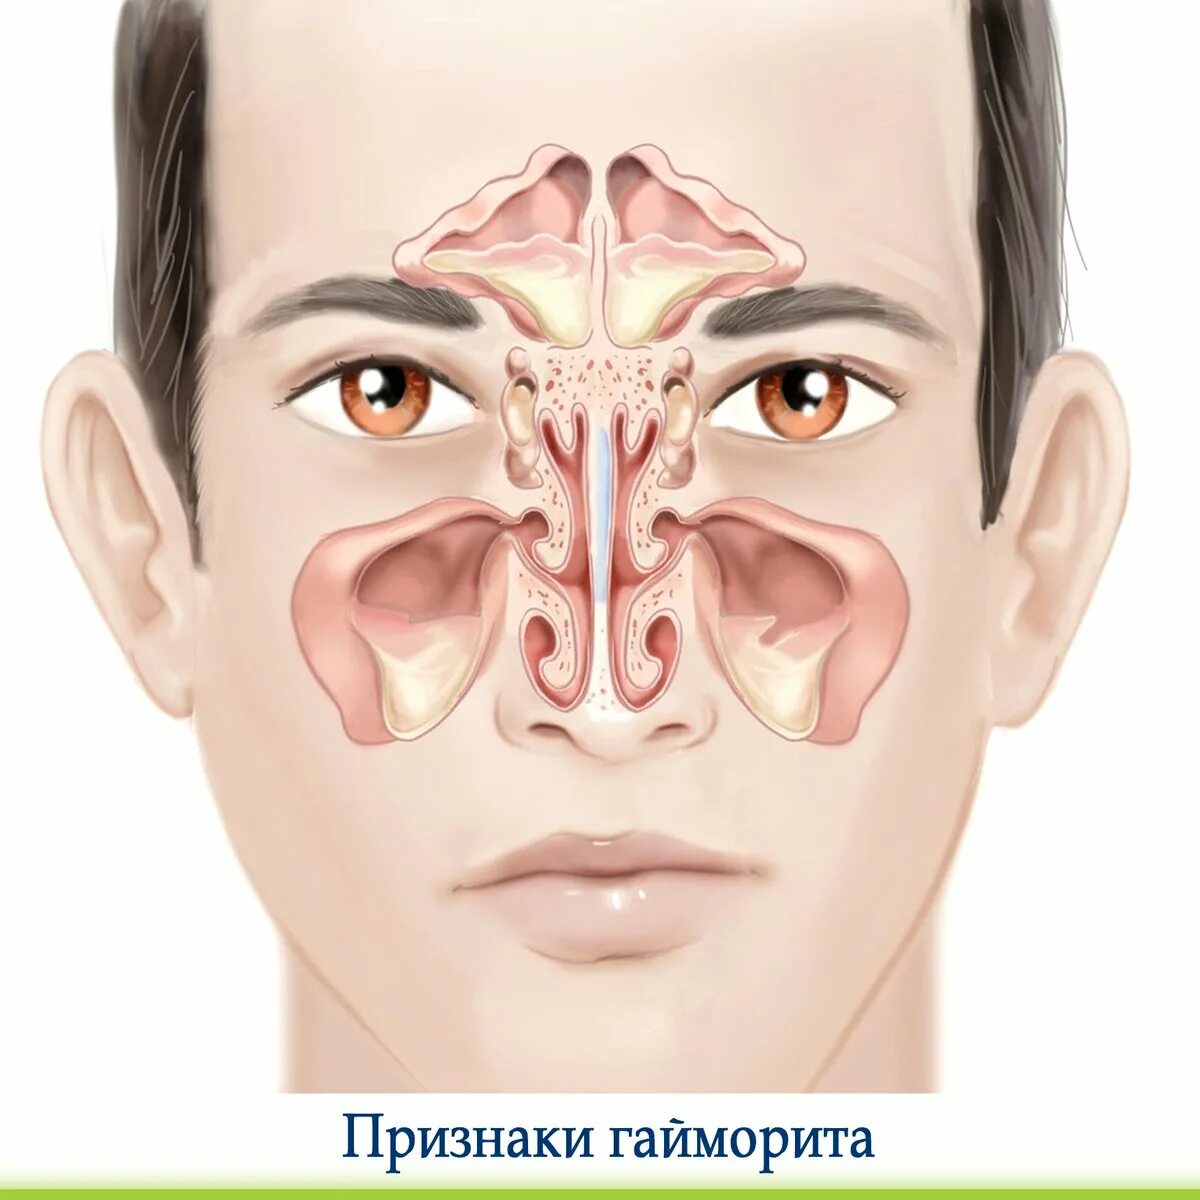 Небольшая заложенность носа. Риносинусит острый риносинусит. Синусит верхнечелюстной пазухи. Гайморовы пазухи анатомия гайморит. Экссудативный пансинусит.